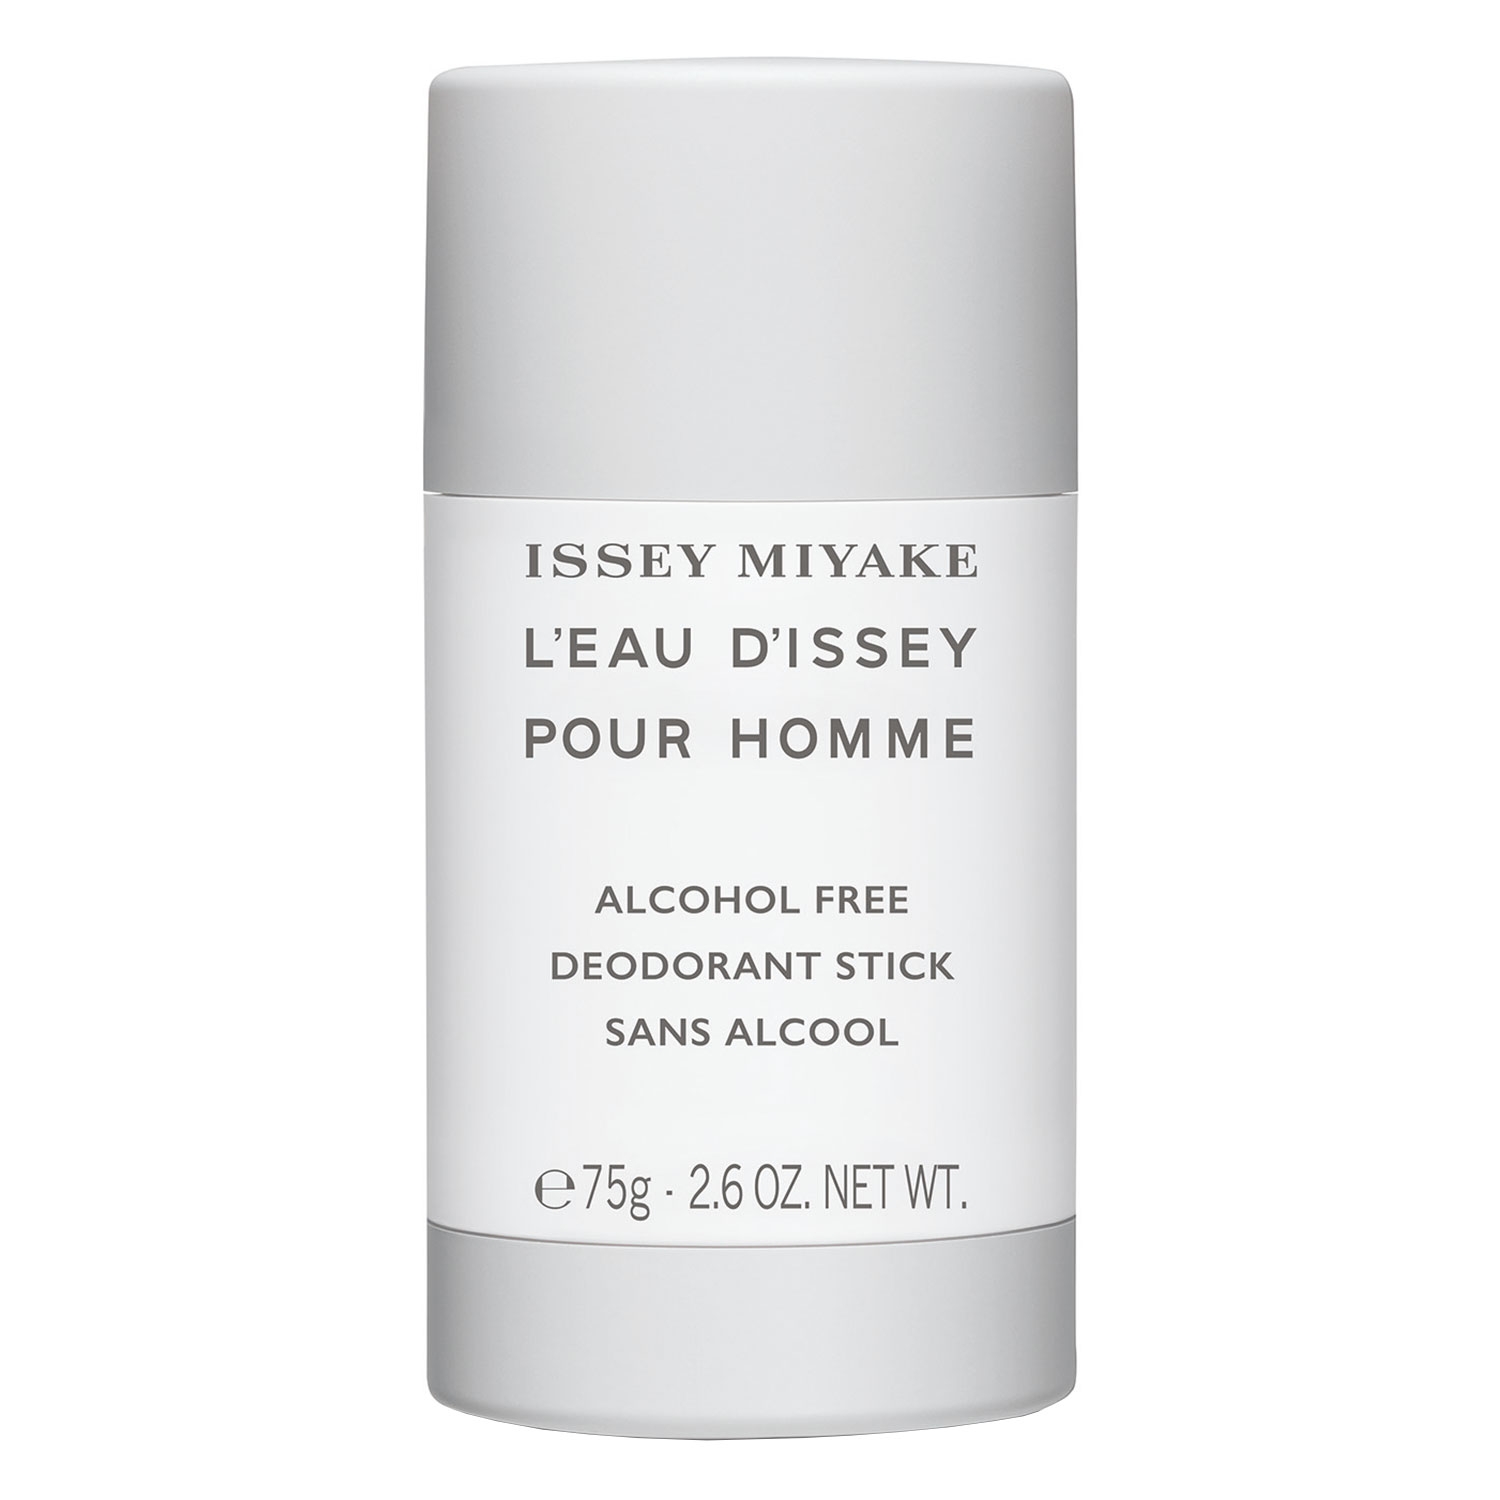 Produktbild von L'Eau D'Issey Pour Homme - Deodorant Stick ohne Alkohol